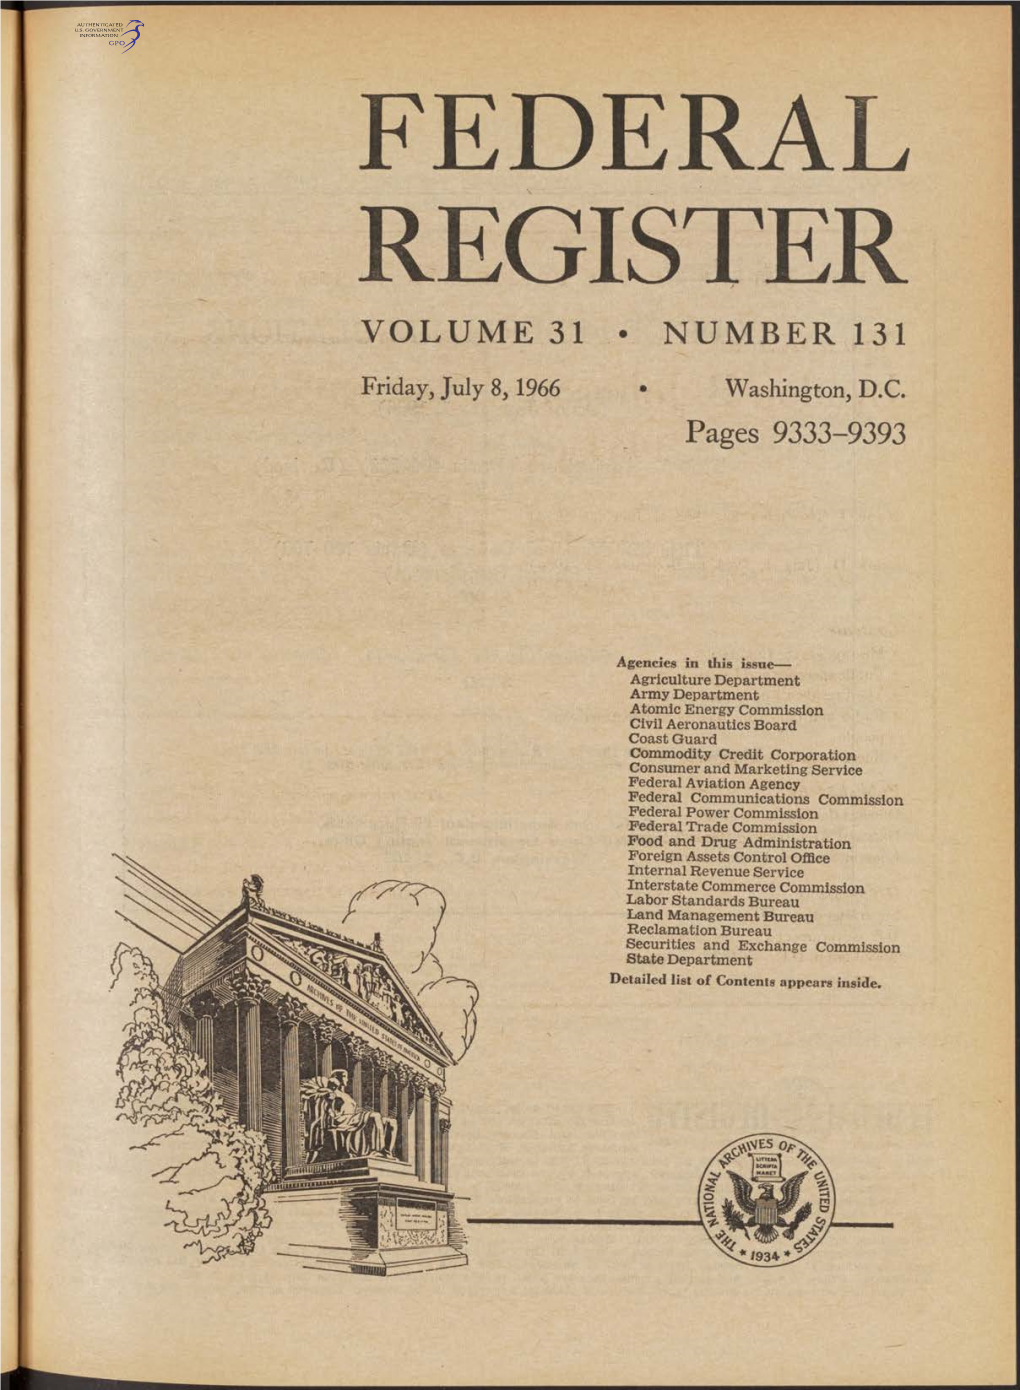 Federal Register Volume 31 • Number 131